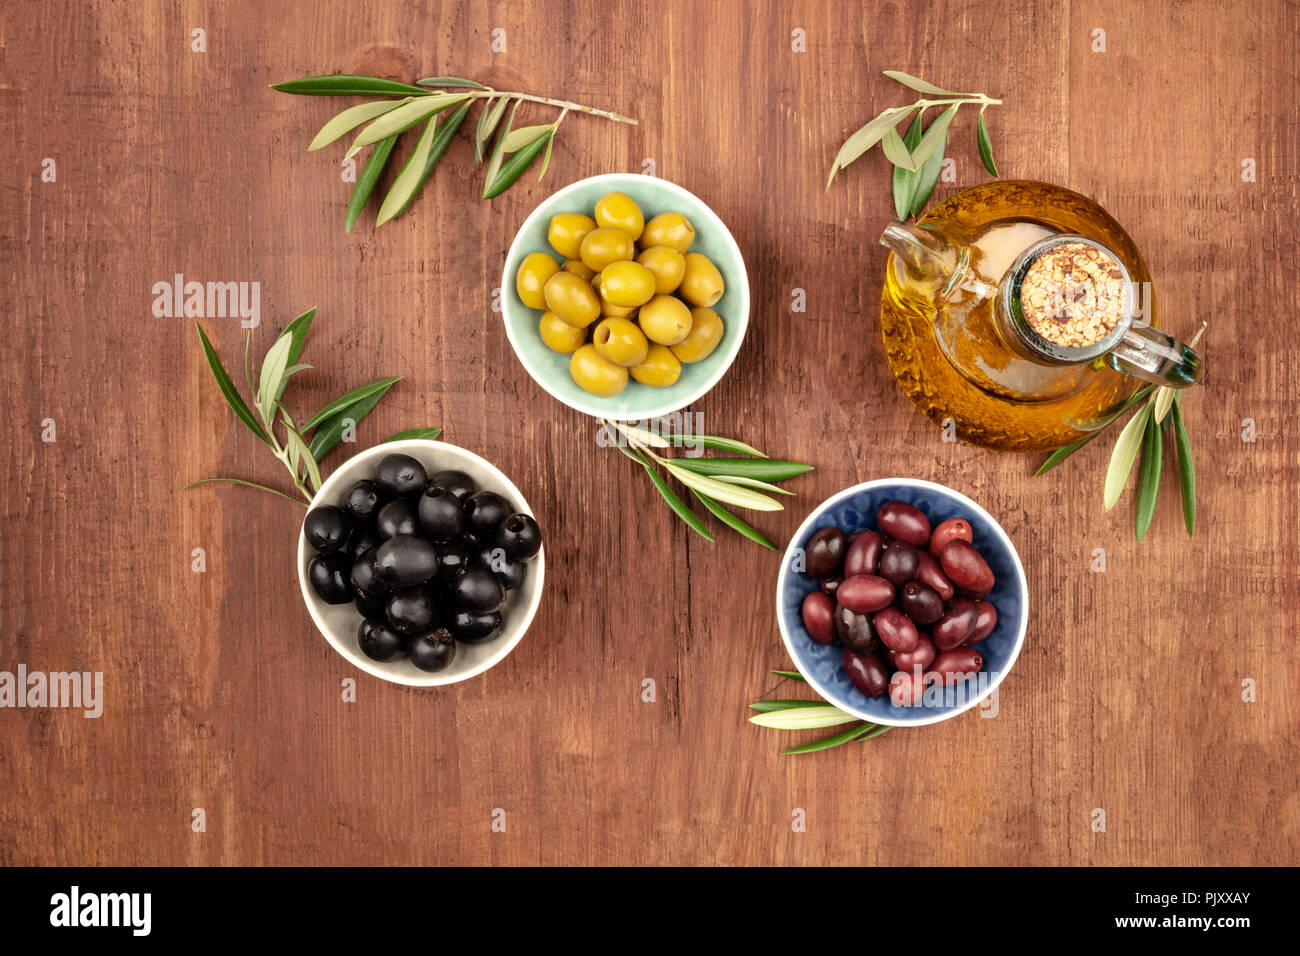 Photo prise à la verticale de différentes olives et huile d'olive avec copie espace Banque D'Images